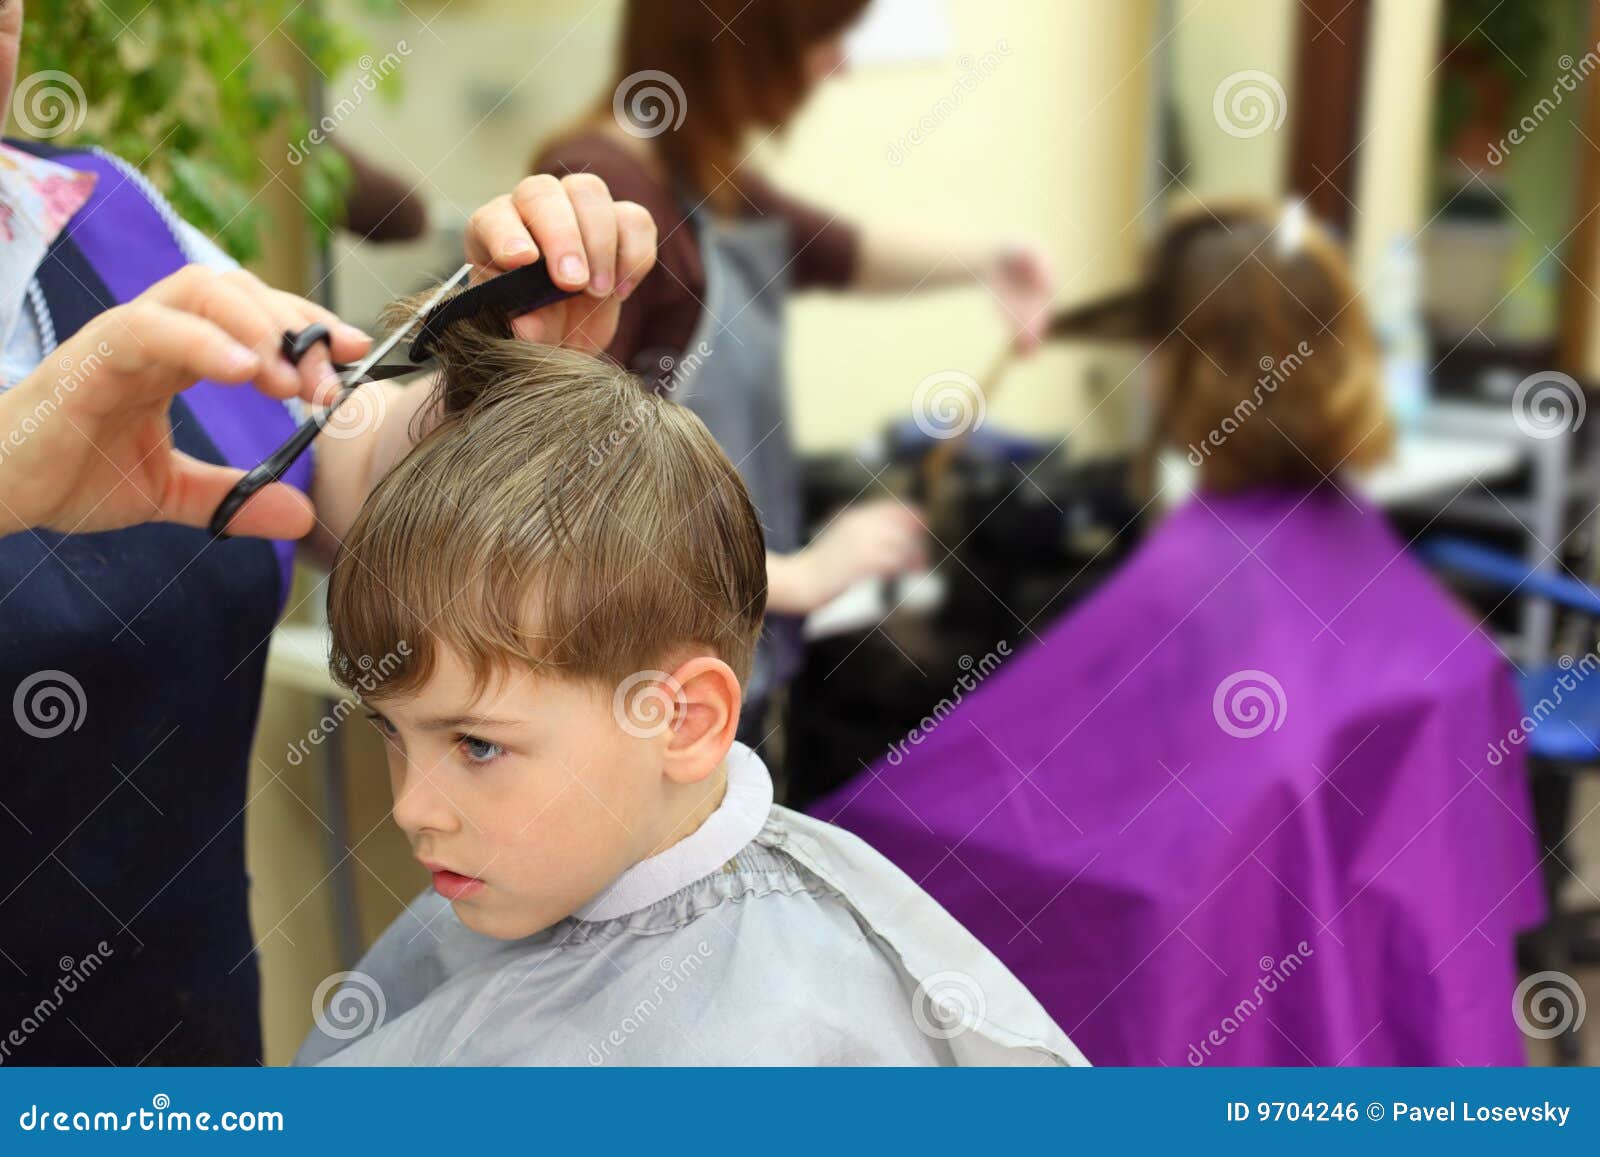 男孩理发 库存照片. 图片 包括有 青少年, 头发, 设计, 剪刀, 工作, 时髦, 美发师, 臀部, 沙龙 - 60633646